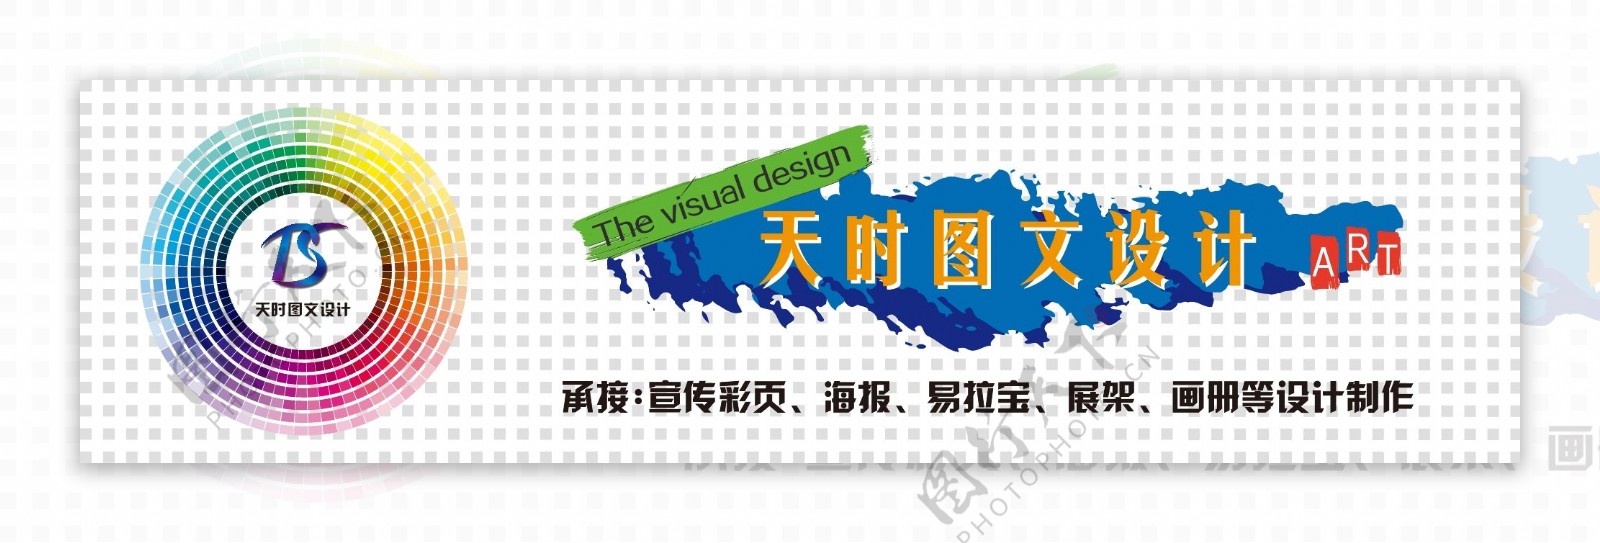 网页banner背景广告设计牌匾宣传